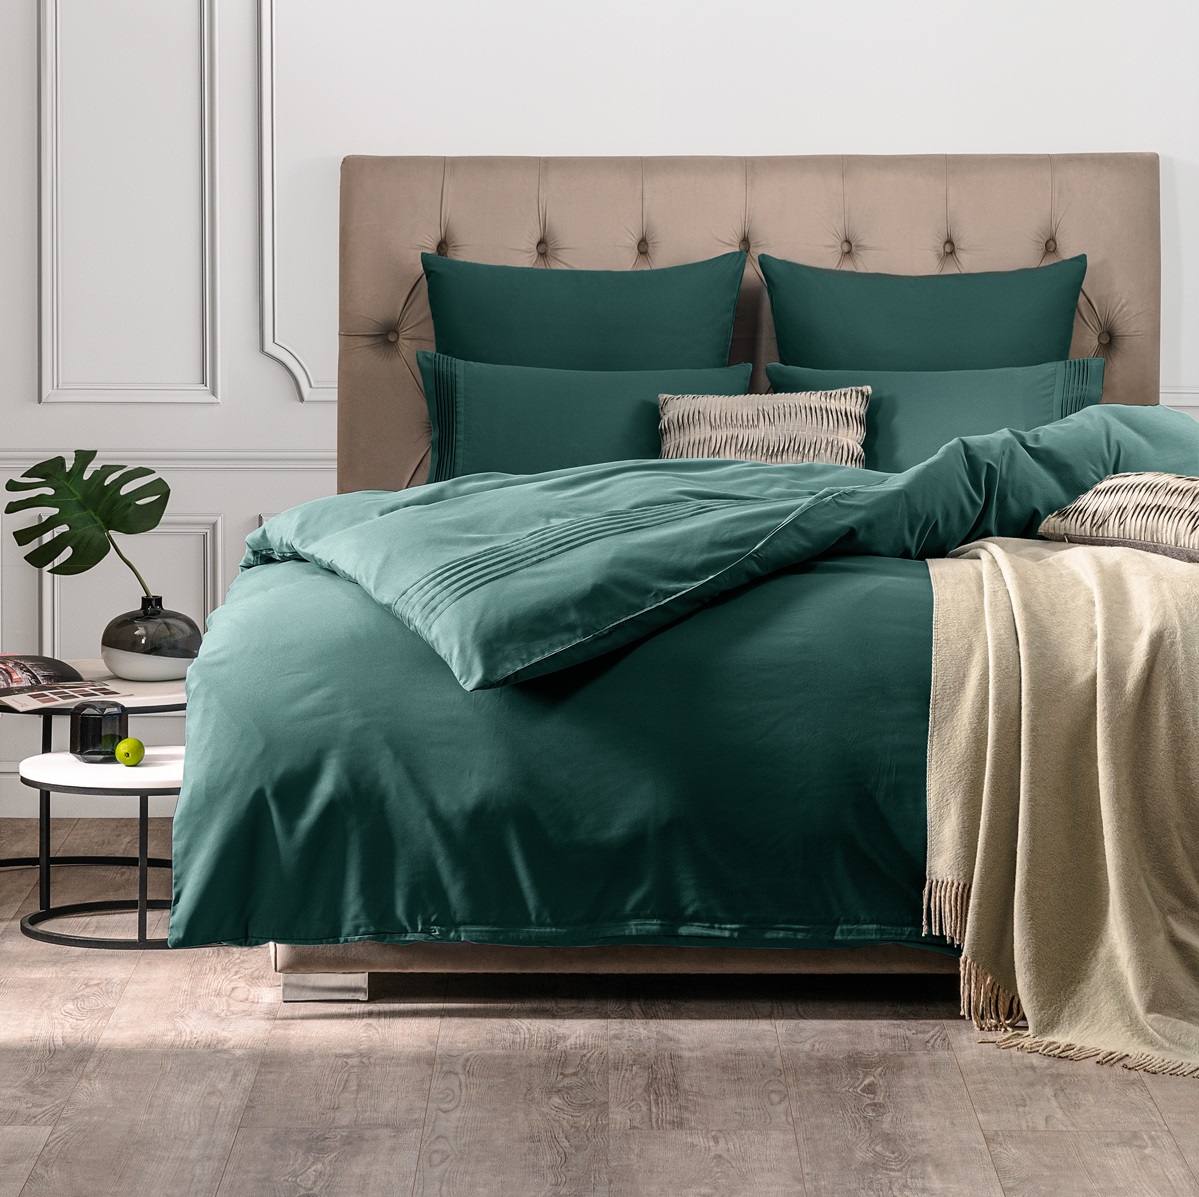 Комплект постельного белья Sleepix Миоко зеленый Полуторный, размер Полуторный